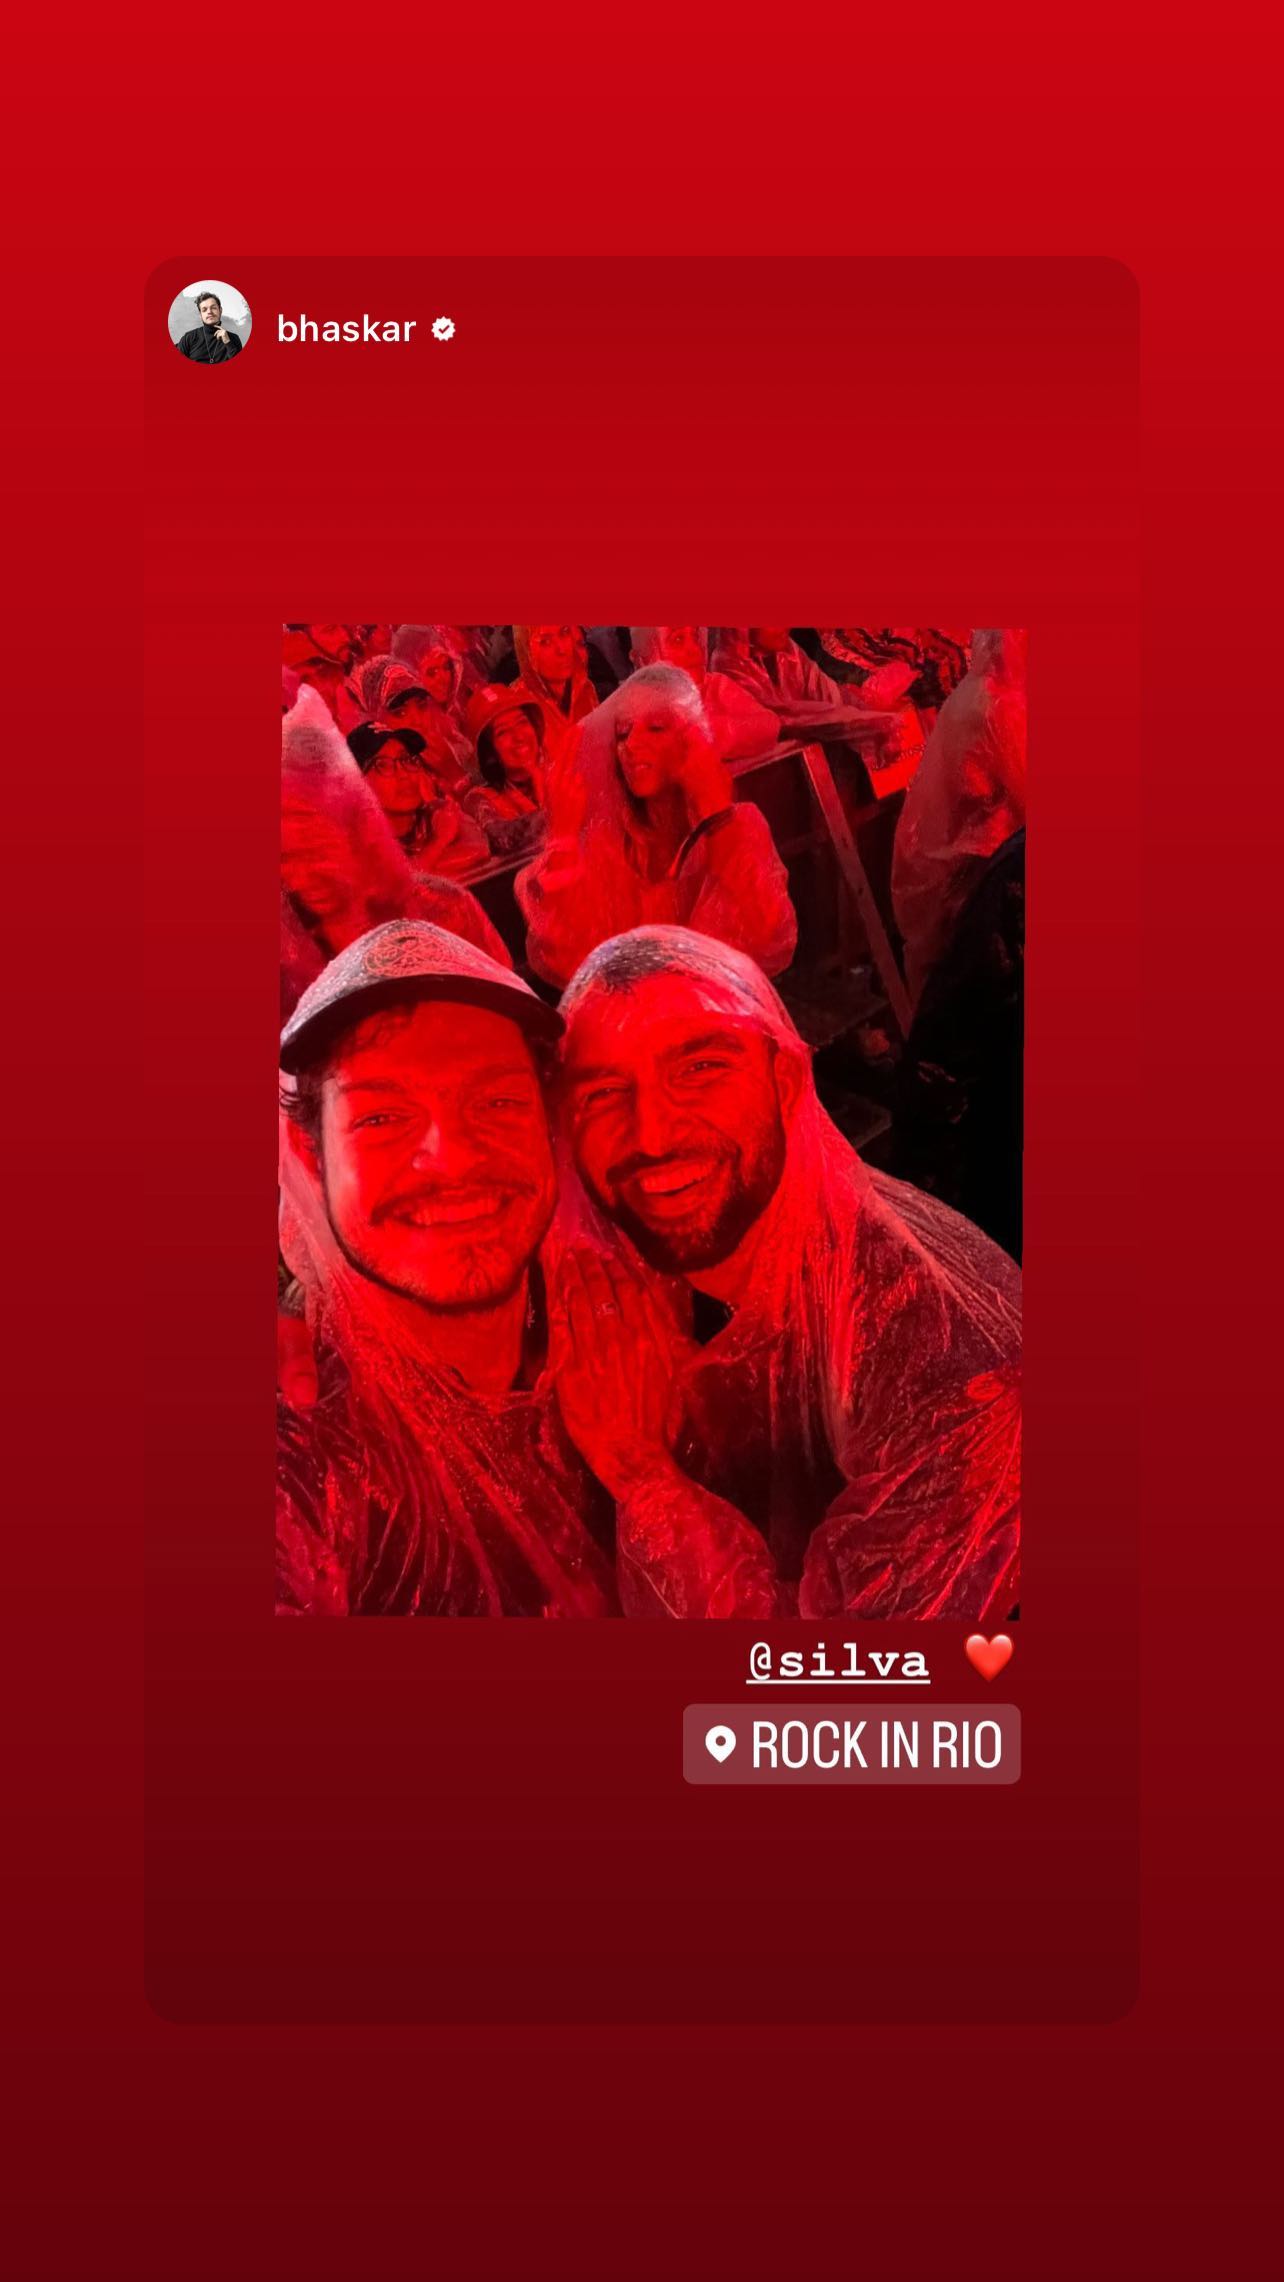 Silva com o amigo e DJ Bhaskar no show da banda Coldplay. (Foto: Reprodução/Instagram)